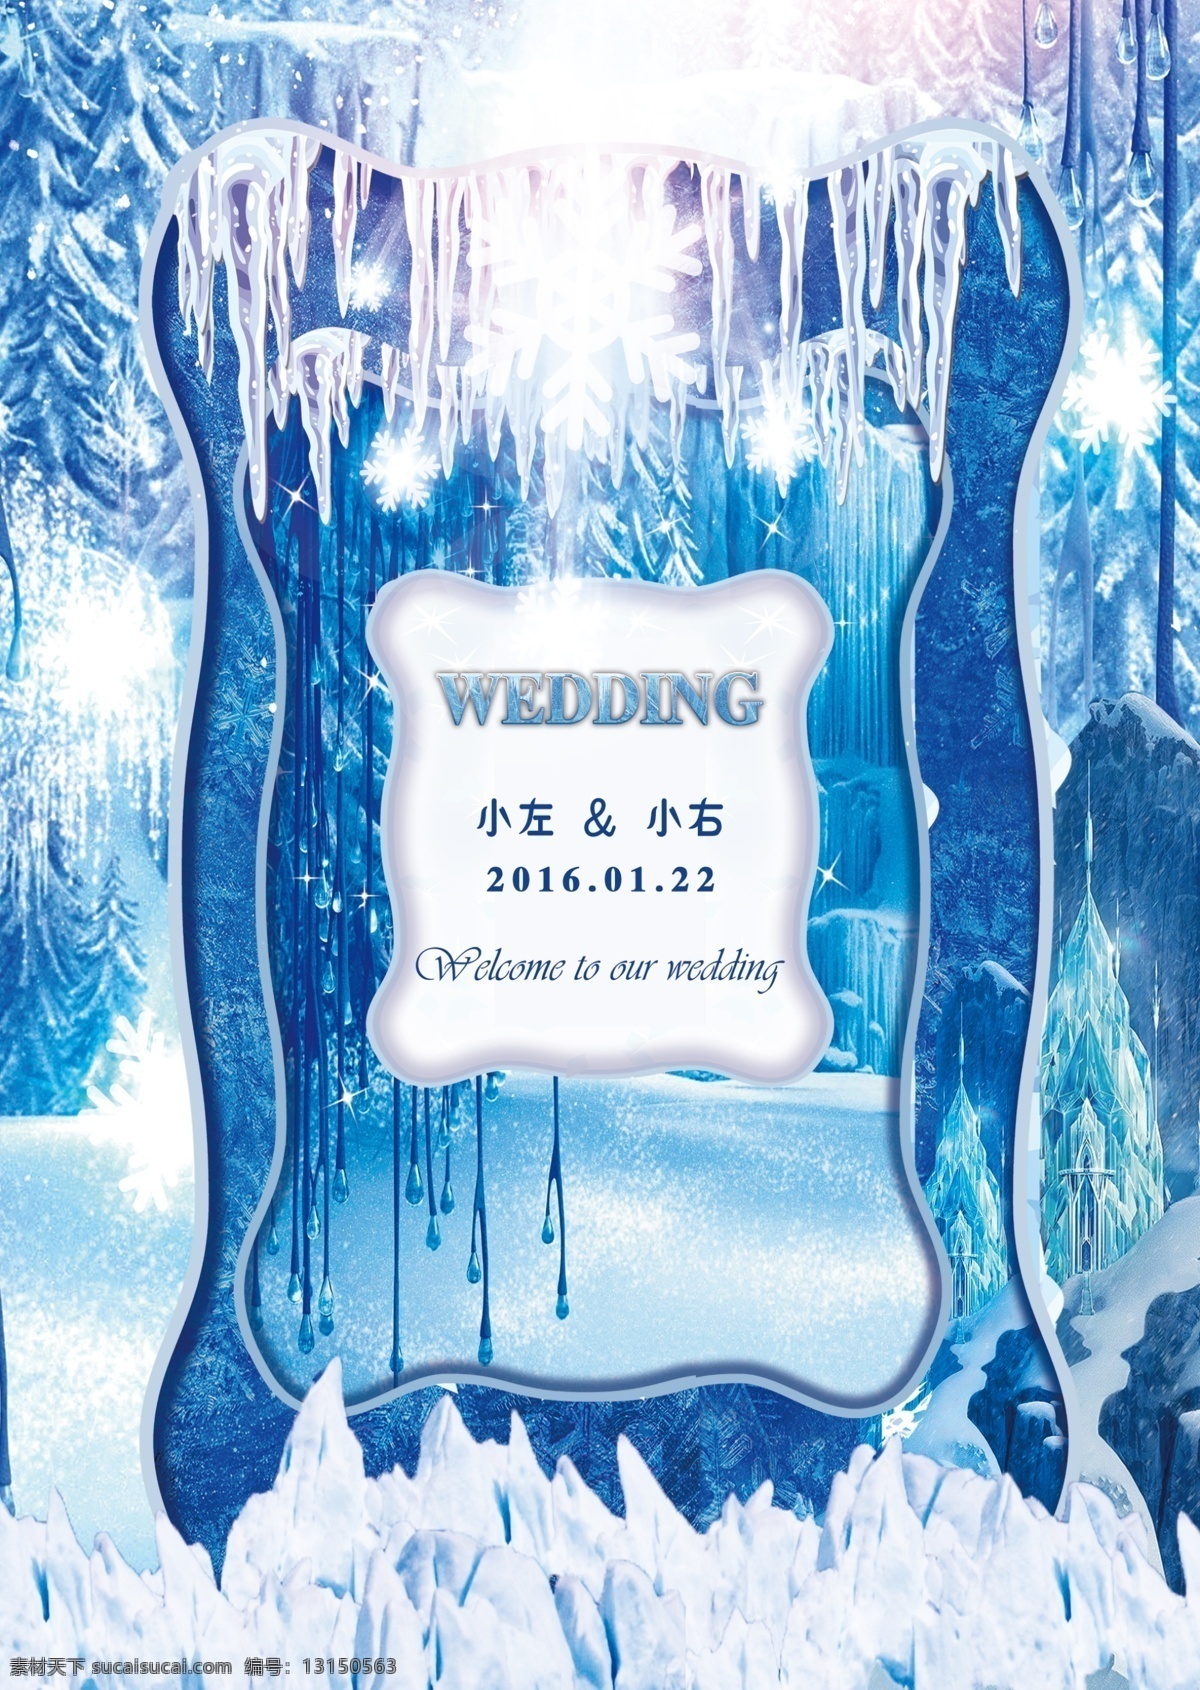 冰雪婚礼 冰雪 蓝色 婚礼 婚礼背景 冰雪世界 分层